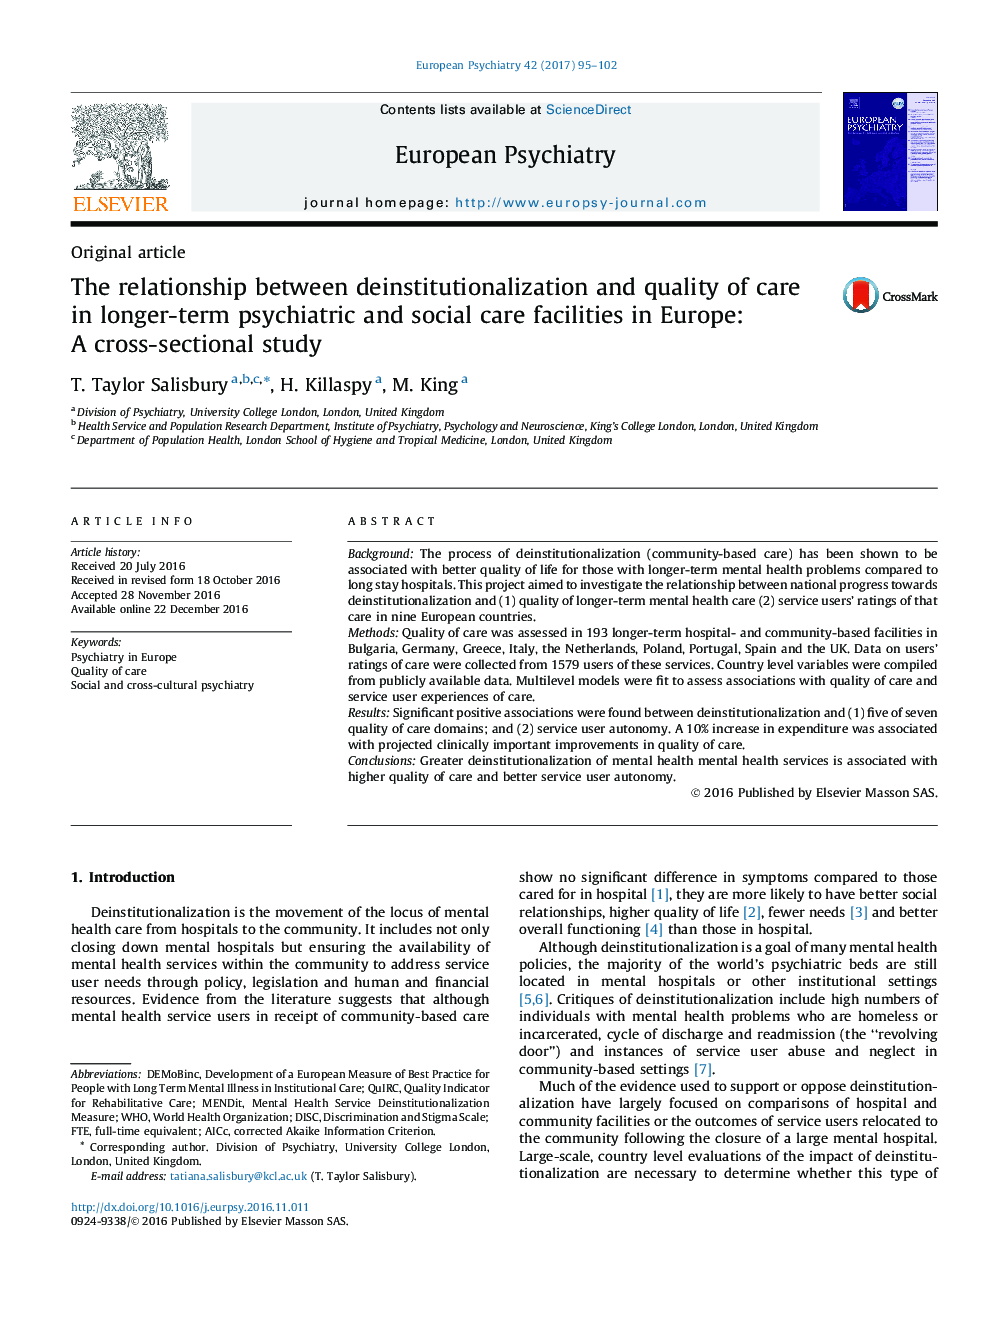 مقاله پژوهشی رابطه بین عدم سازگاری و کیفیت مراقبت در مراکز درمانی روانپزشکی و مراقبت های اجتماعی در اروپا: یک مطالعه مقطعی 